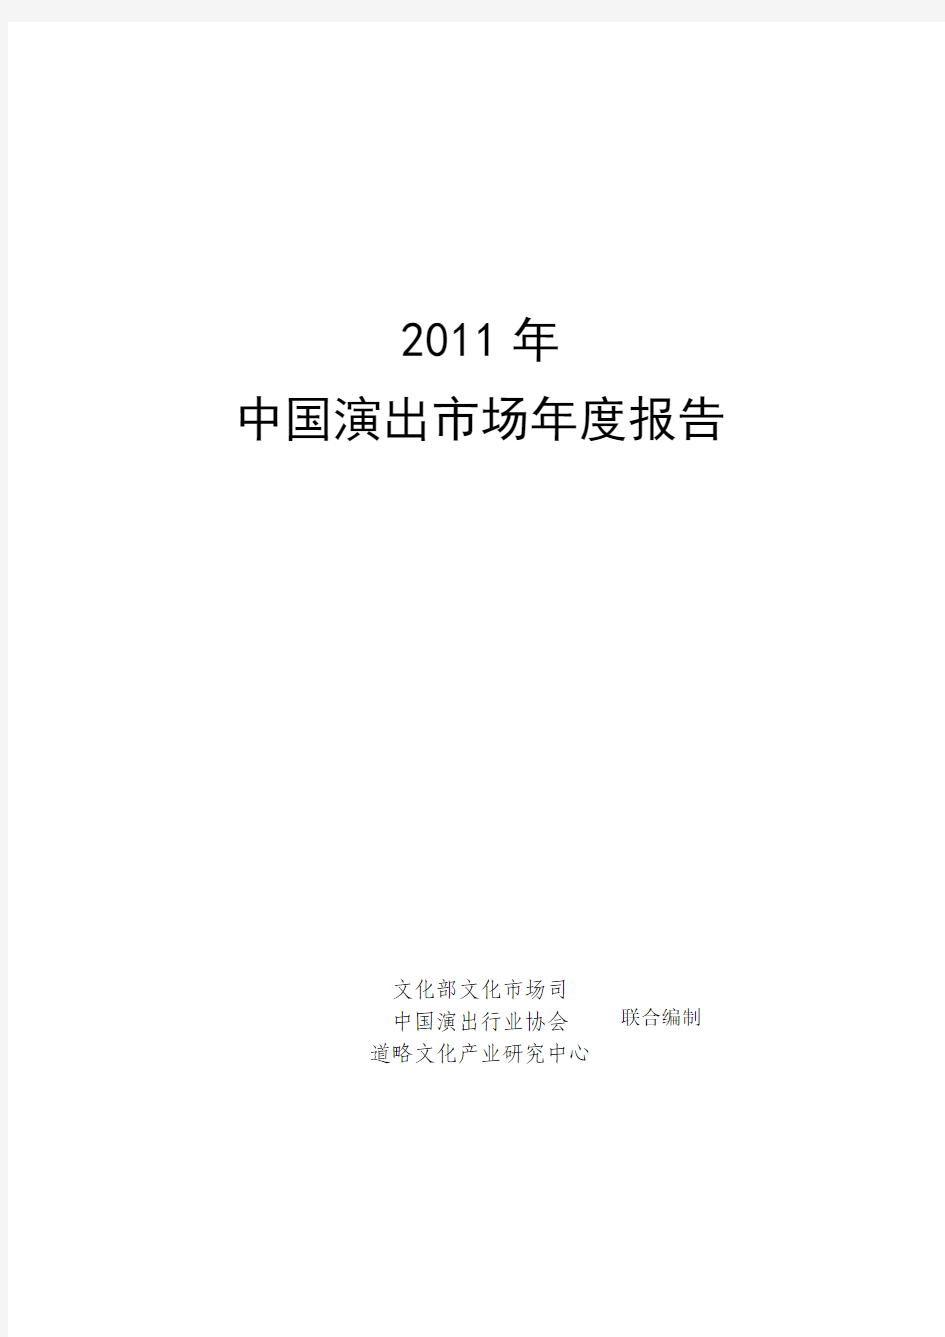 【行业研究报告】2011年中国演出市场年度报告